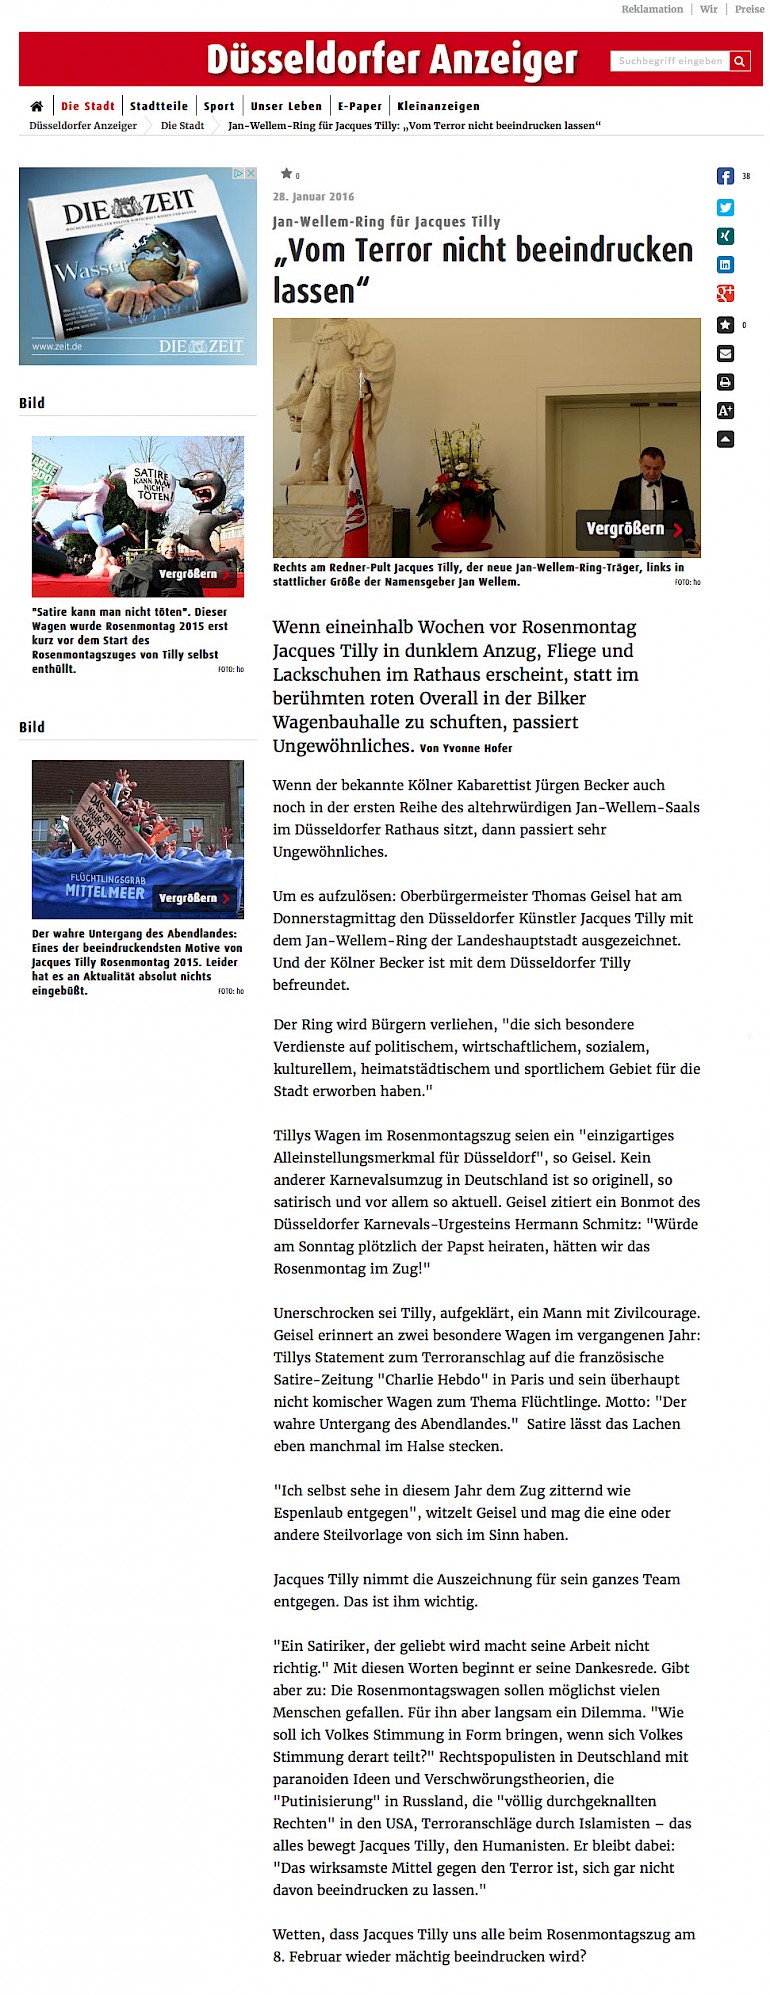 Düsseldorfer Anzeiger Online, 29.1.2016